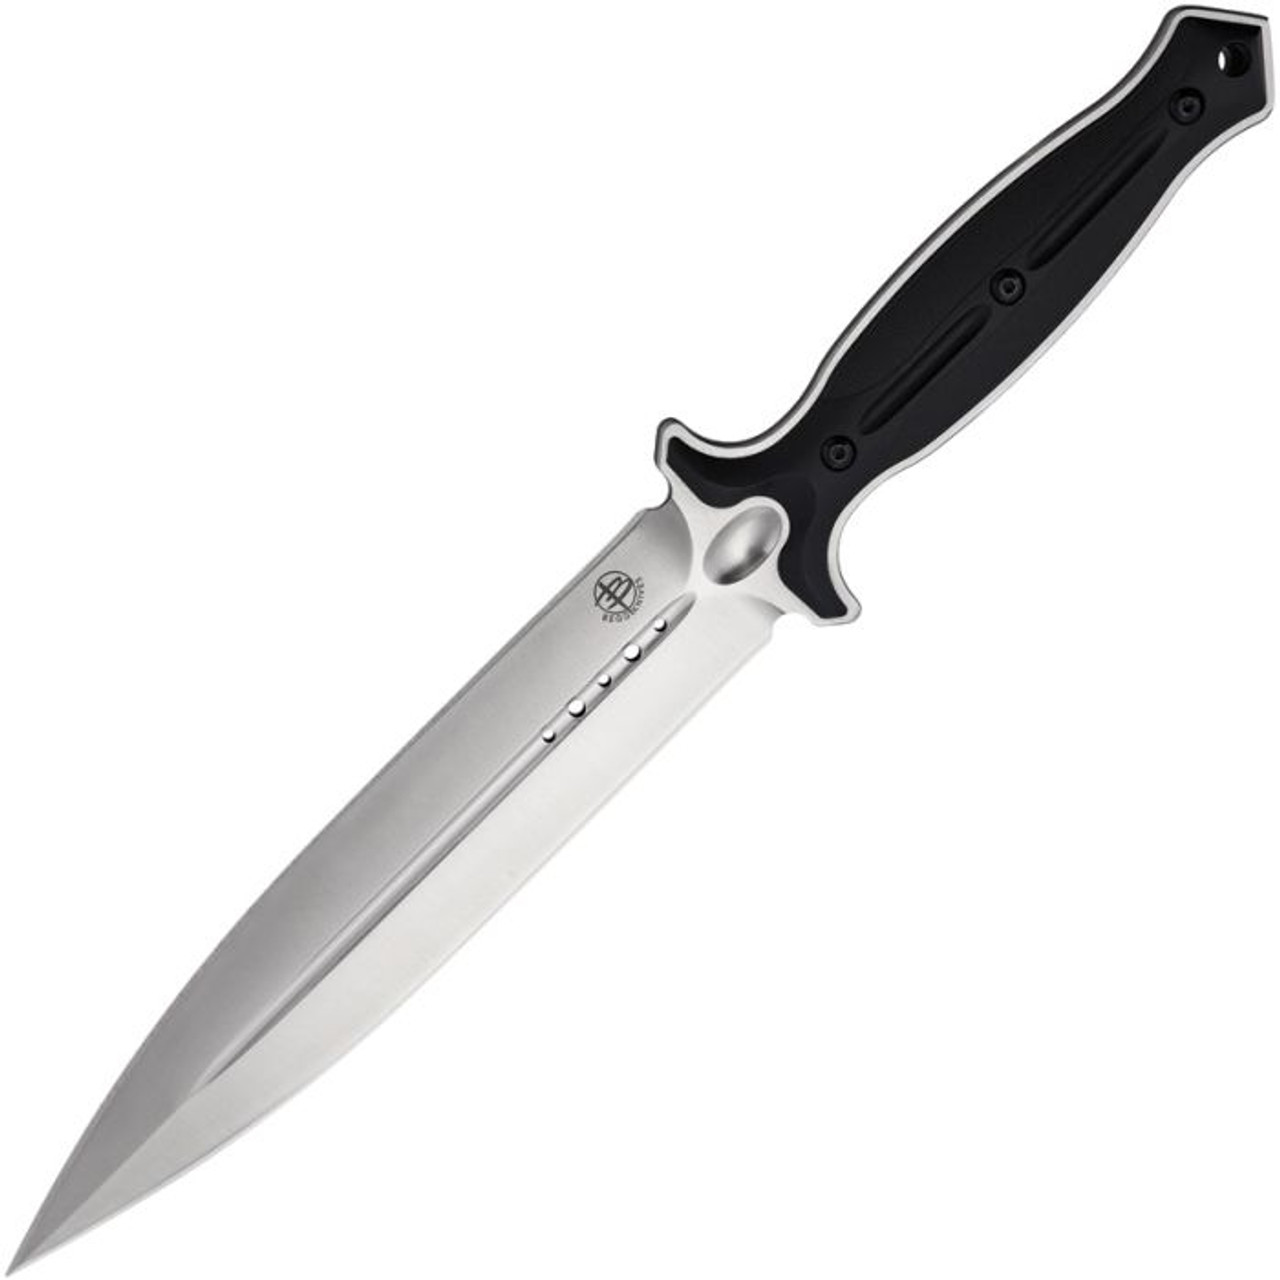 Begg Knives Filoso Dagger Fixed Blade Knife (BG031)- 8" Satin 1095HC Dagger Blade, Black Injection Molded Nylon Handle